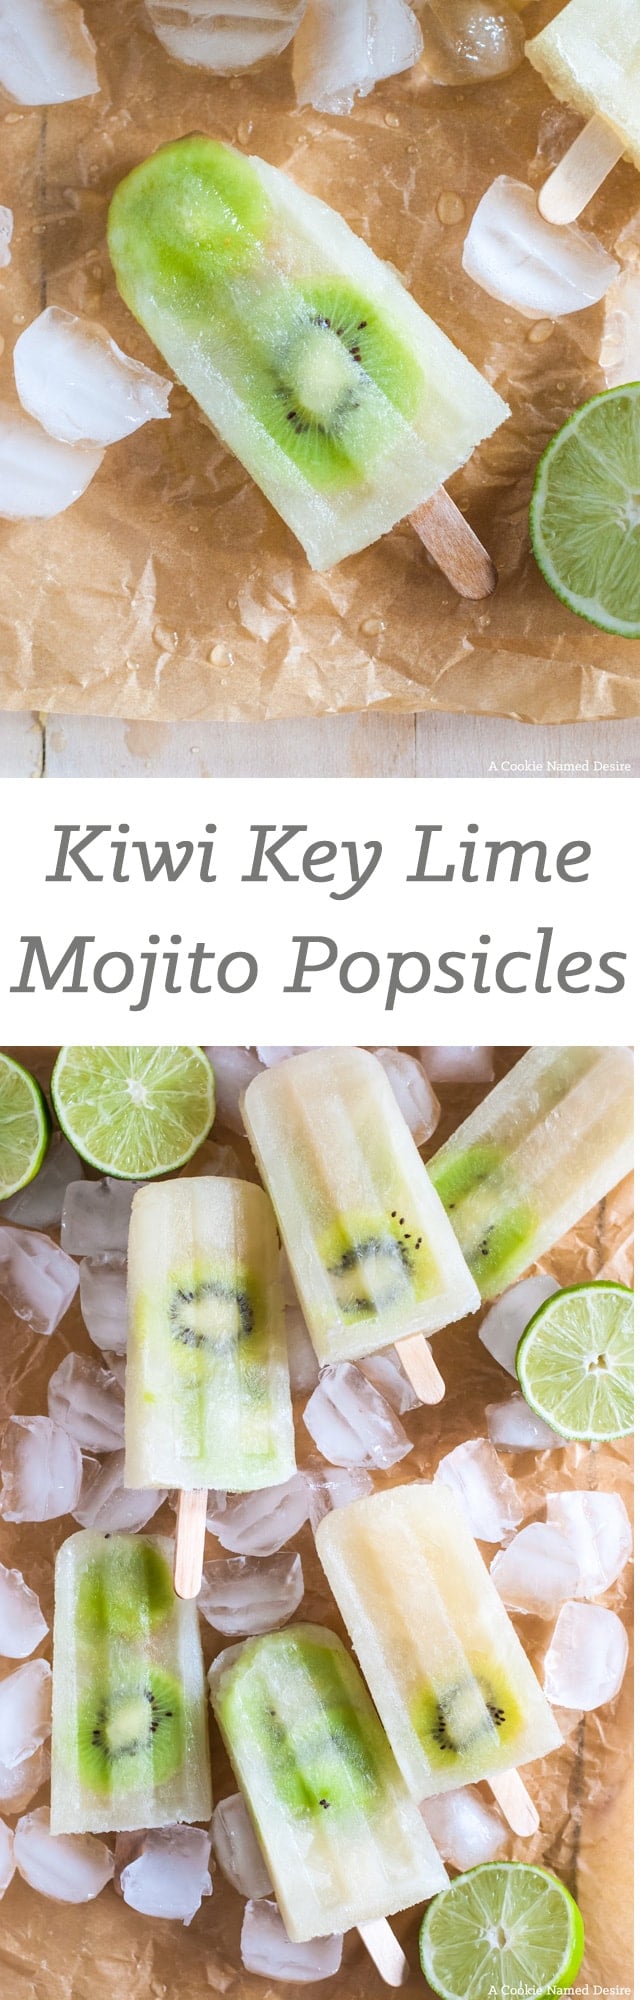 kiwi key lime mojito popsicles 